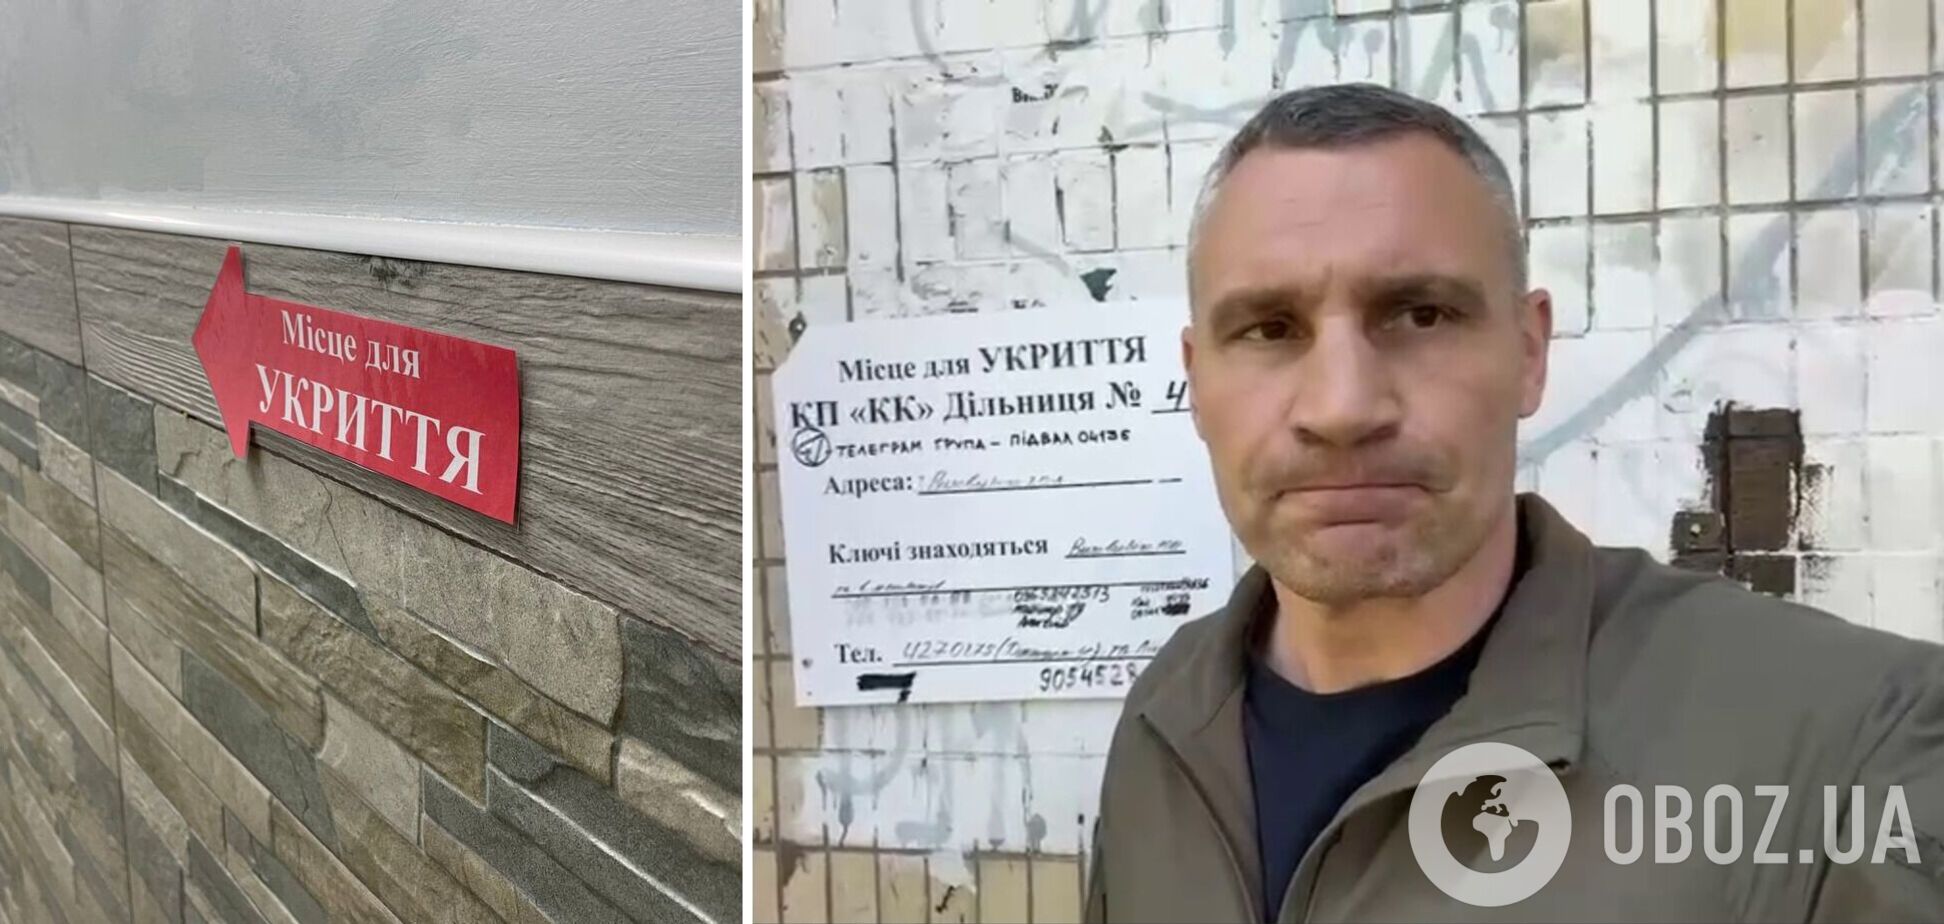 Мэр проверил укрытия, на которые жаловались киевляне